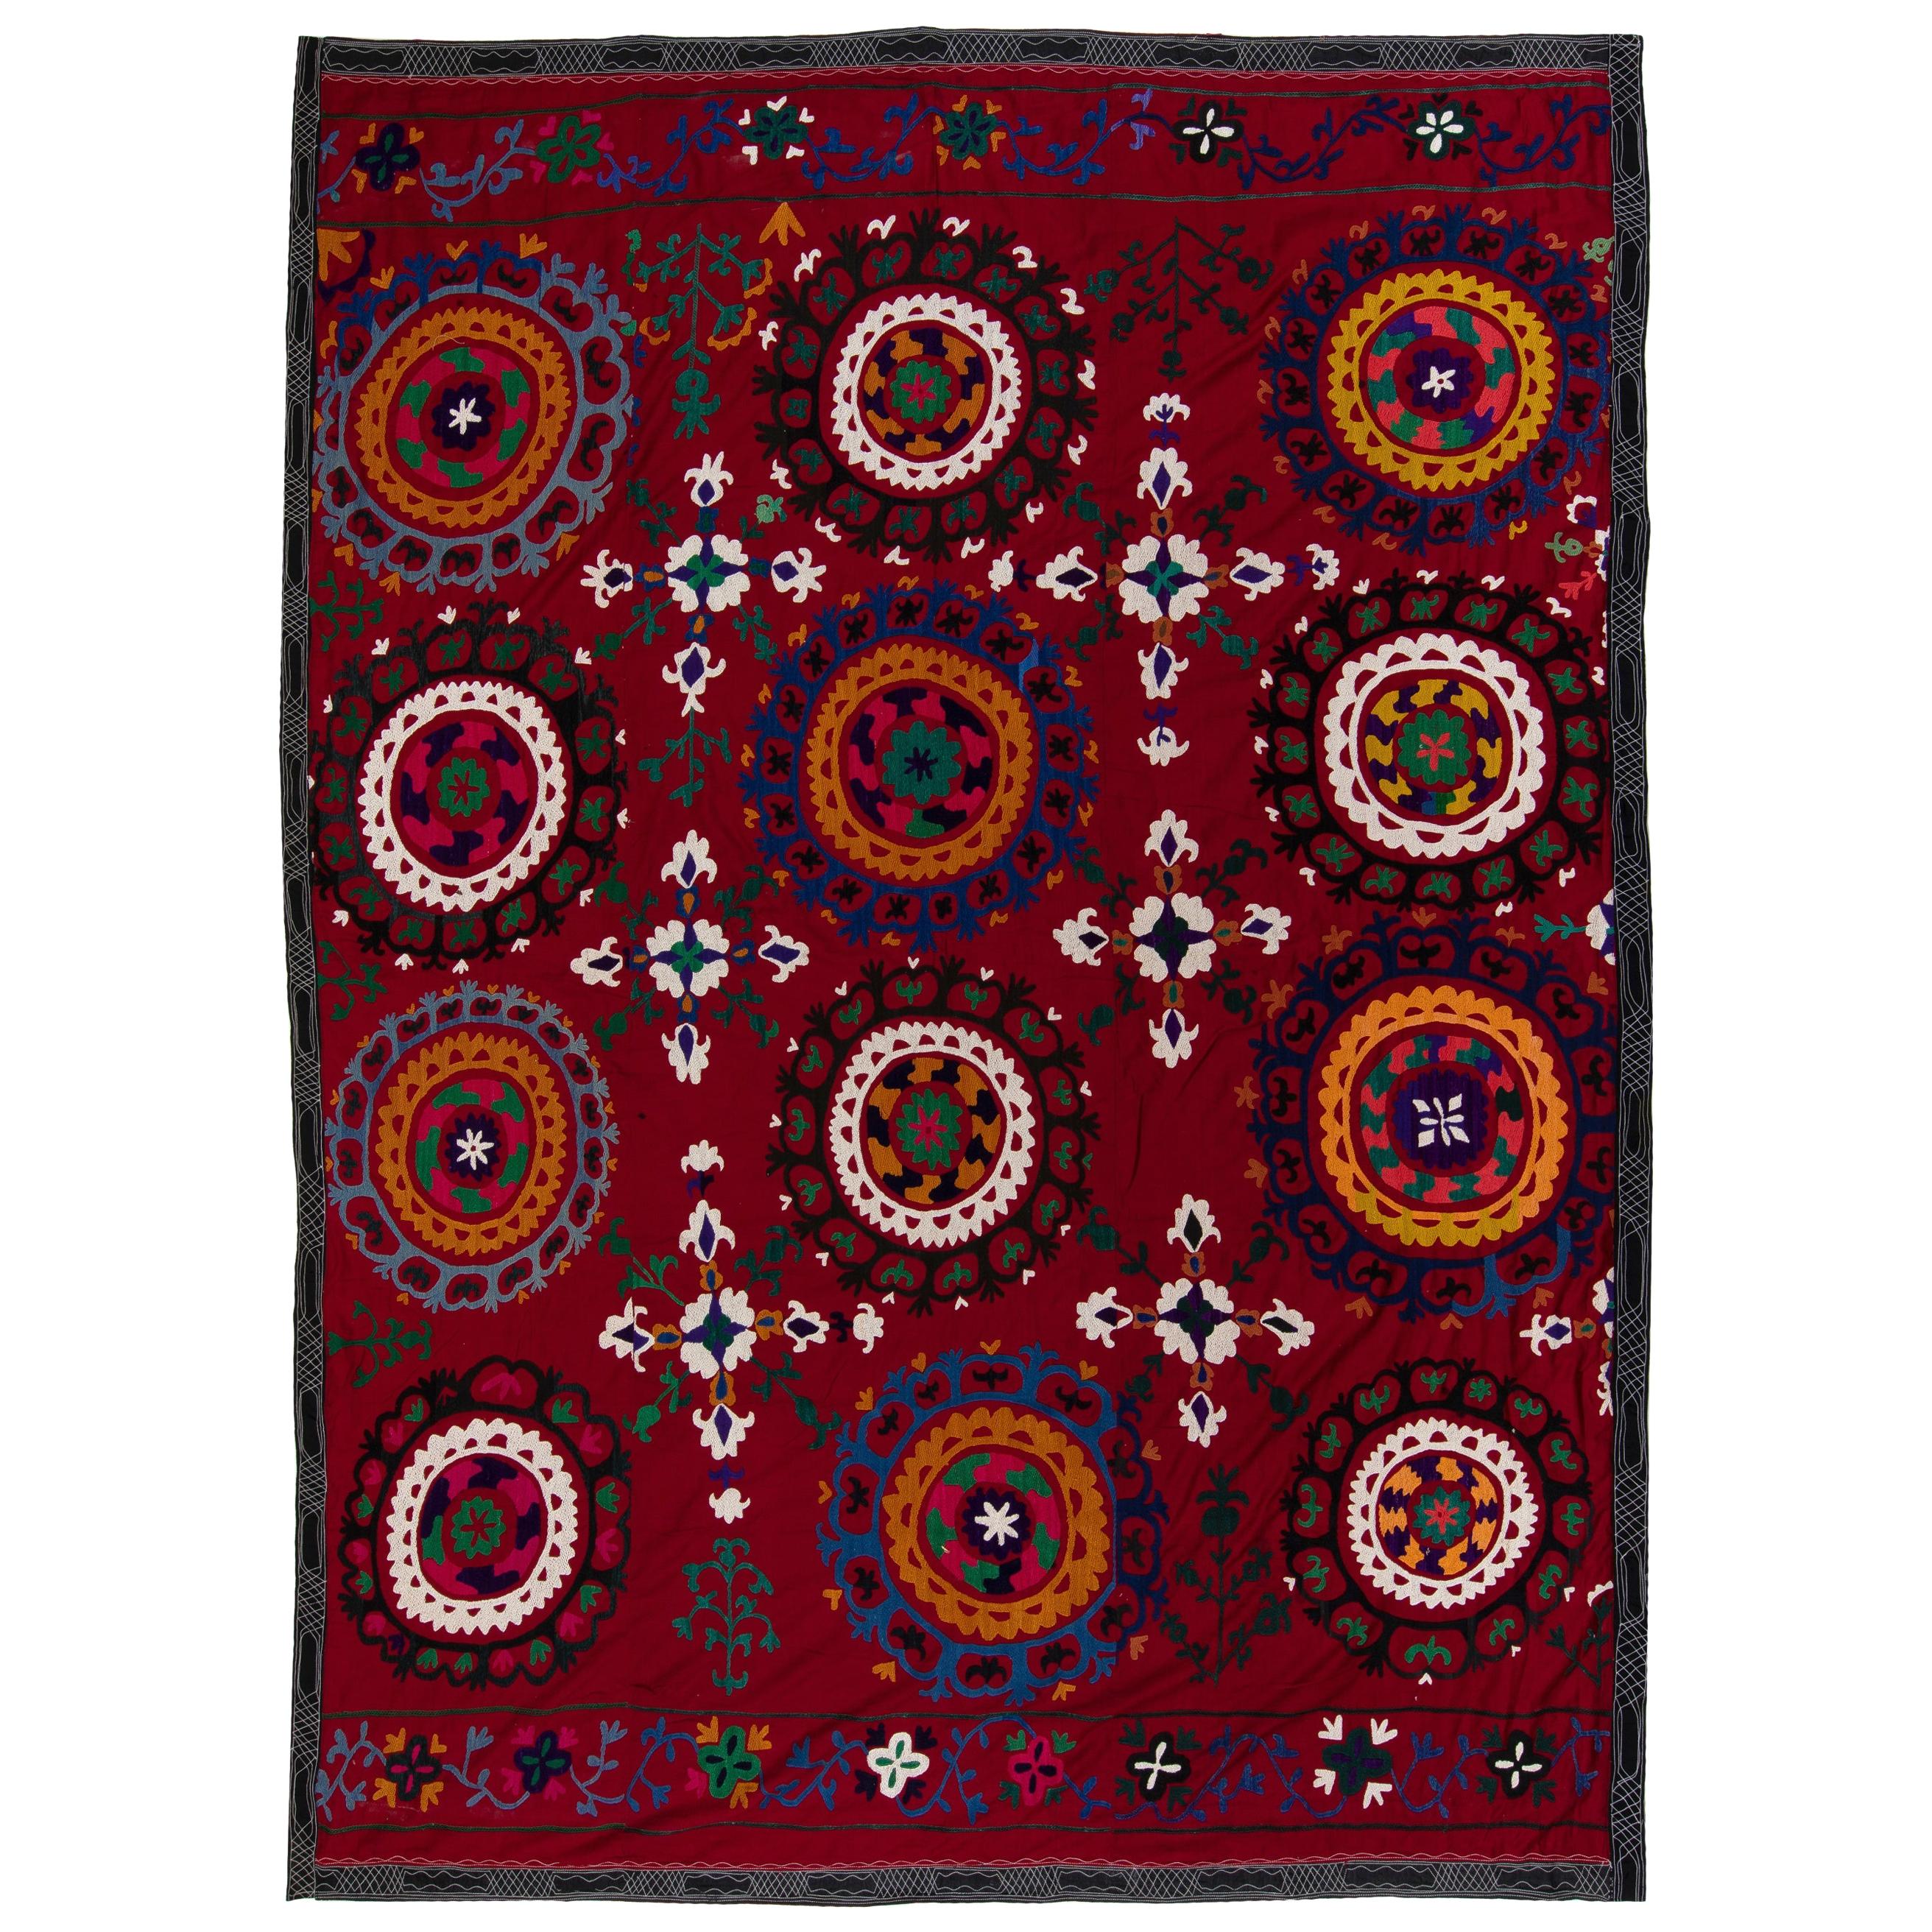 Textile Suzani Asie centrale 6,4 x 8,4 m, tenture murale en coton et soie brodée